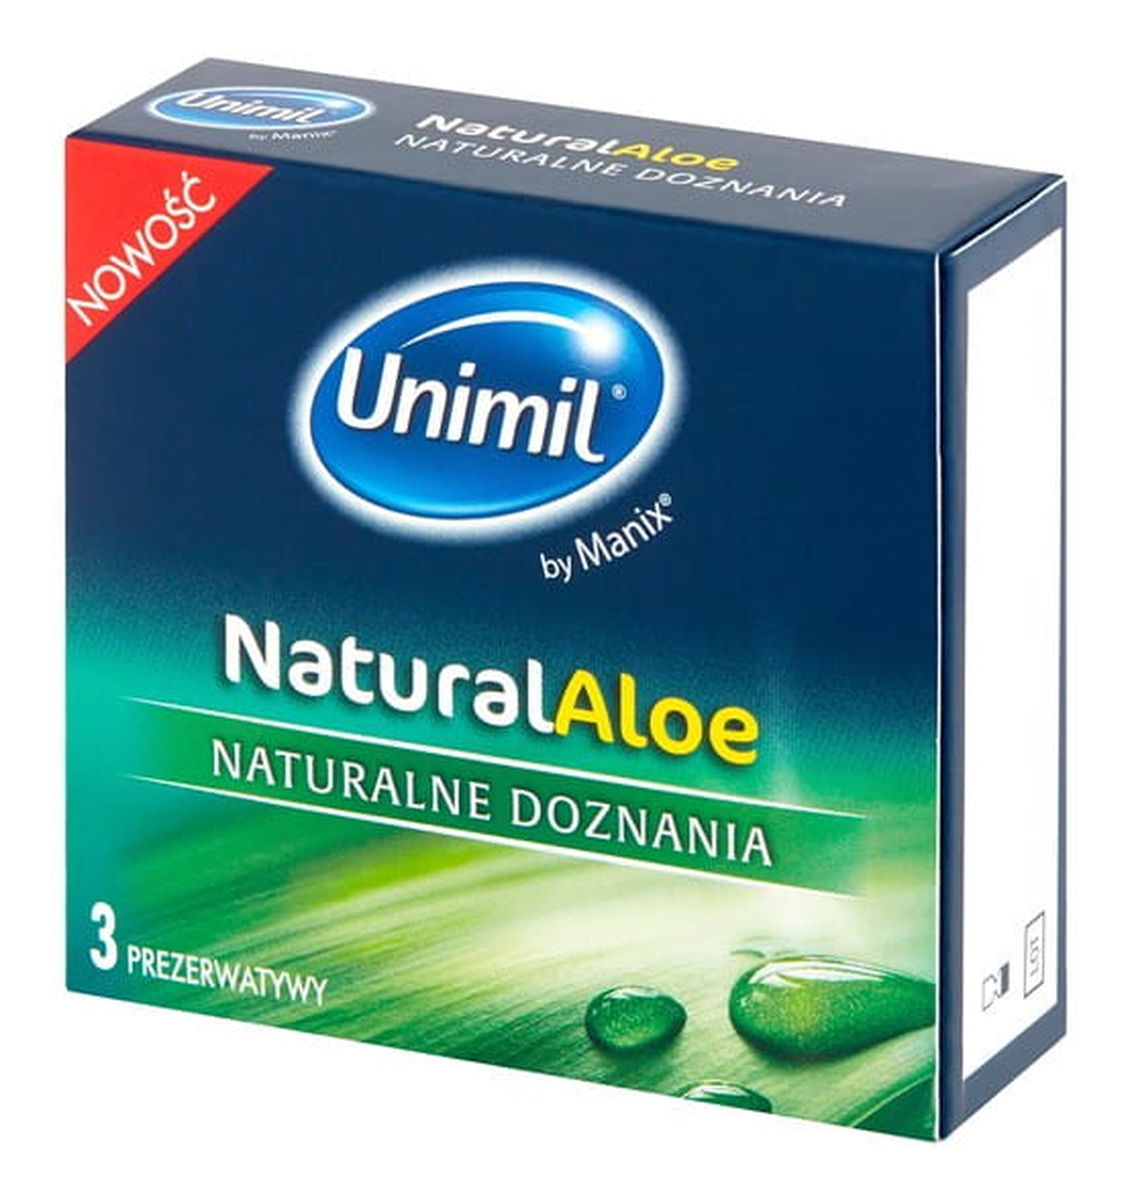 Natural aloe lateksowe prezerwatywy 3szt